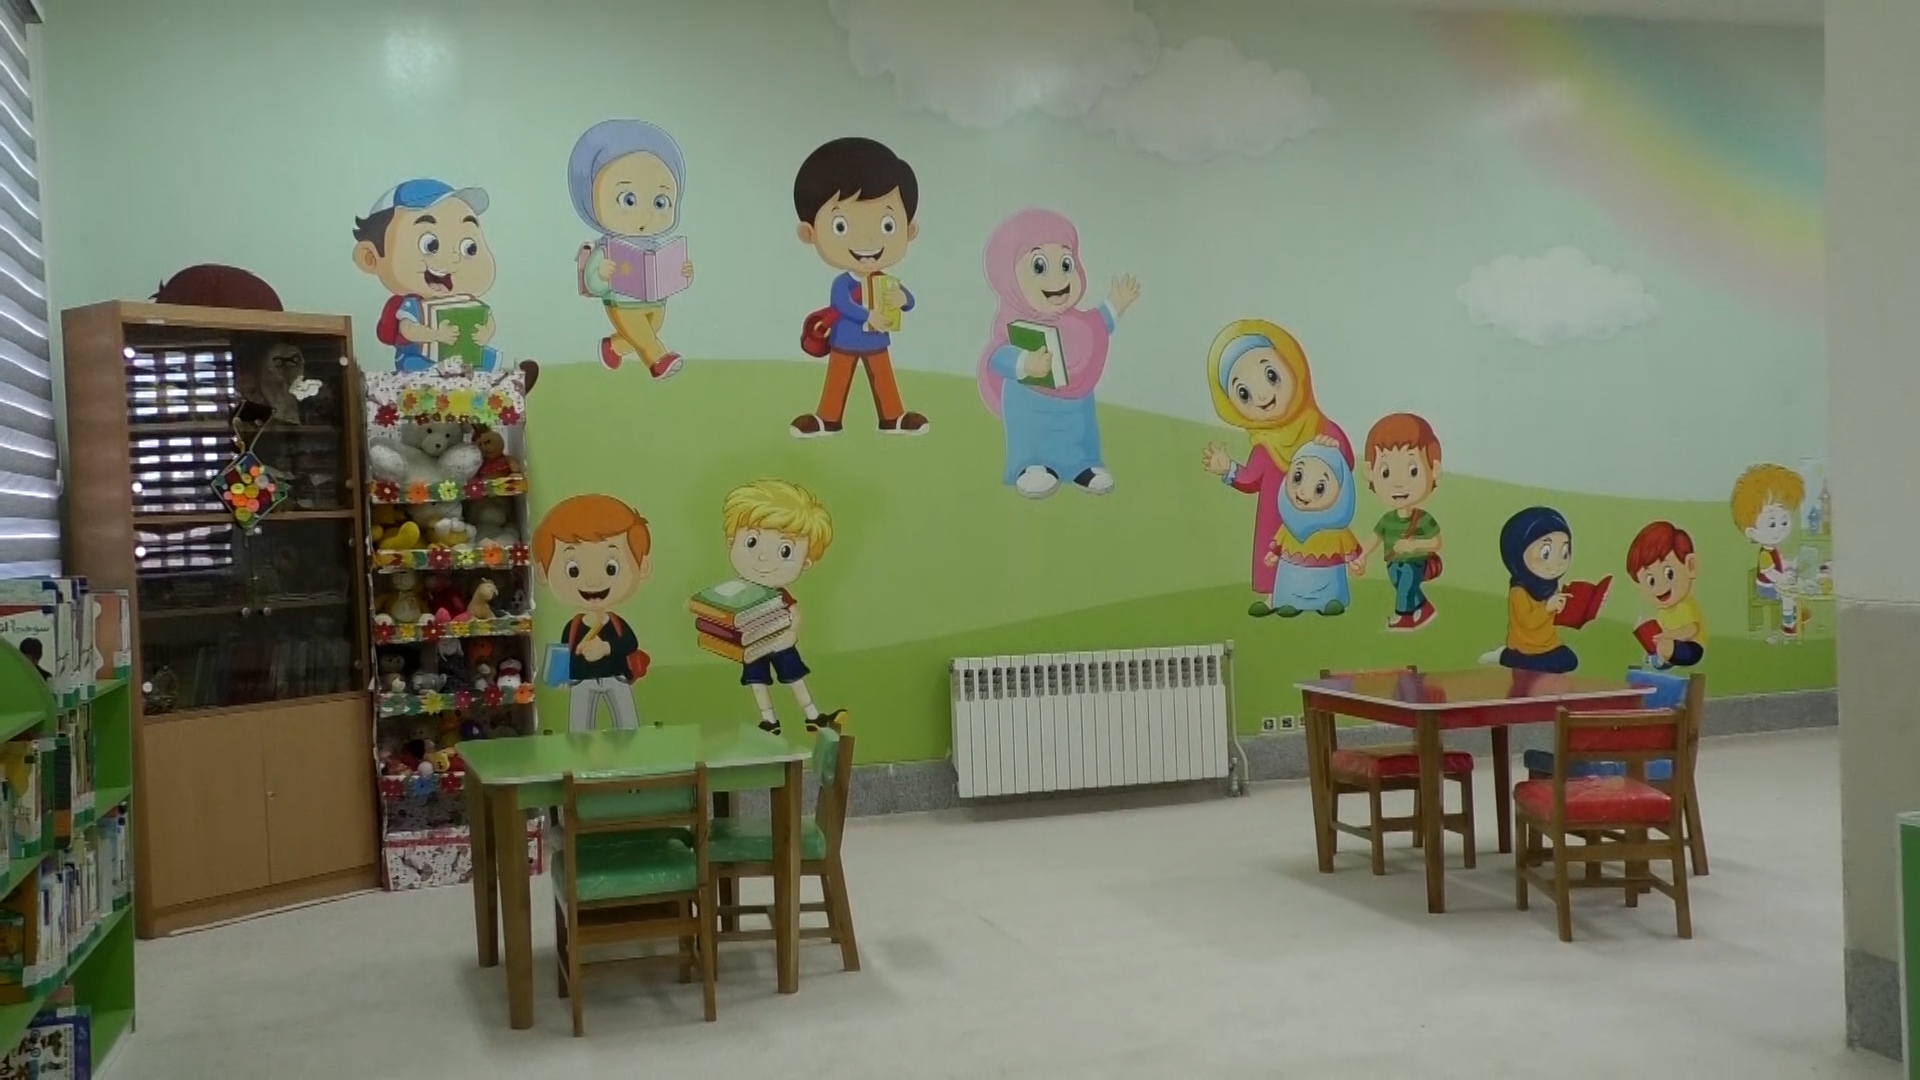 افتتاح بخش کودک کتابخانه عمومی شهر حبیب آباد